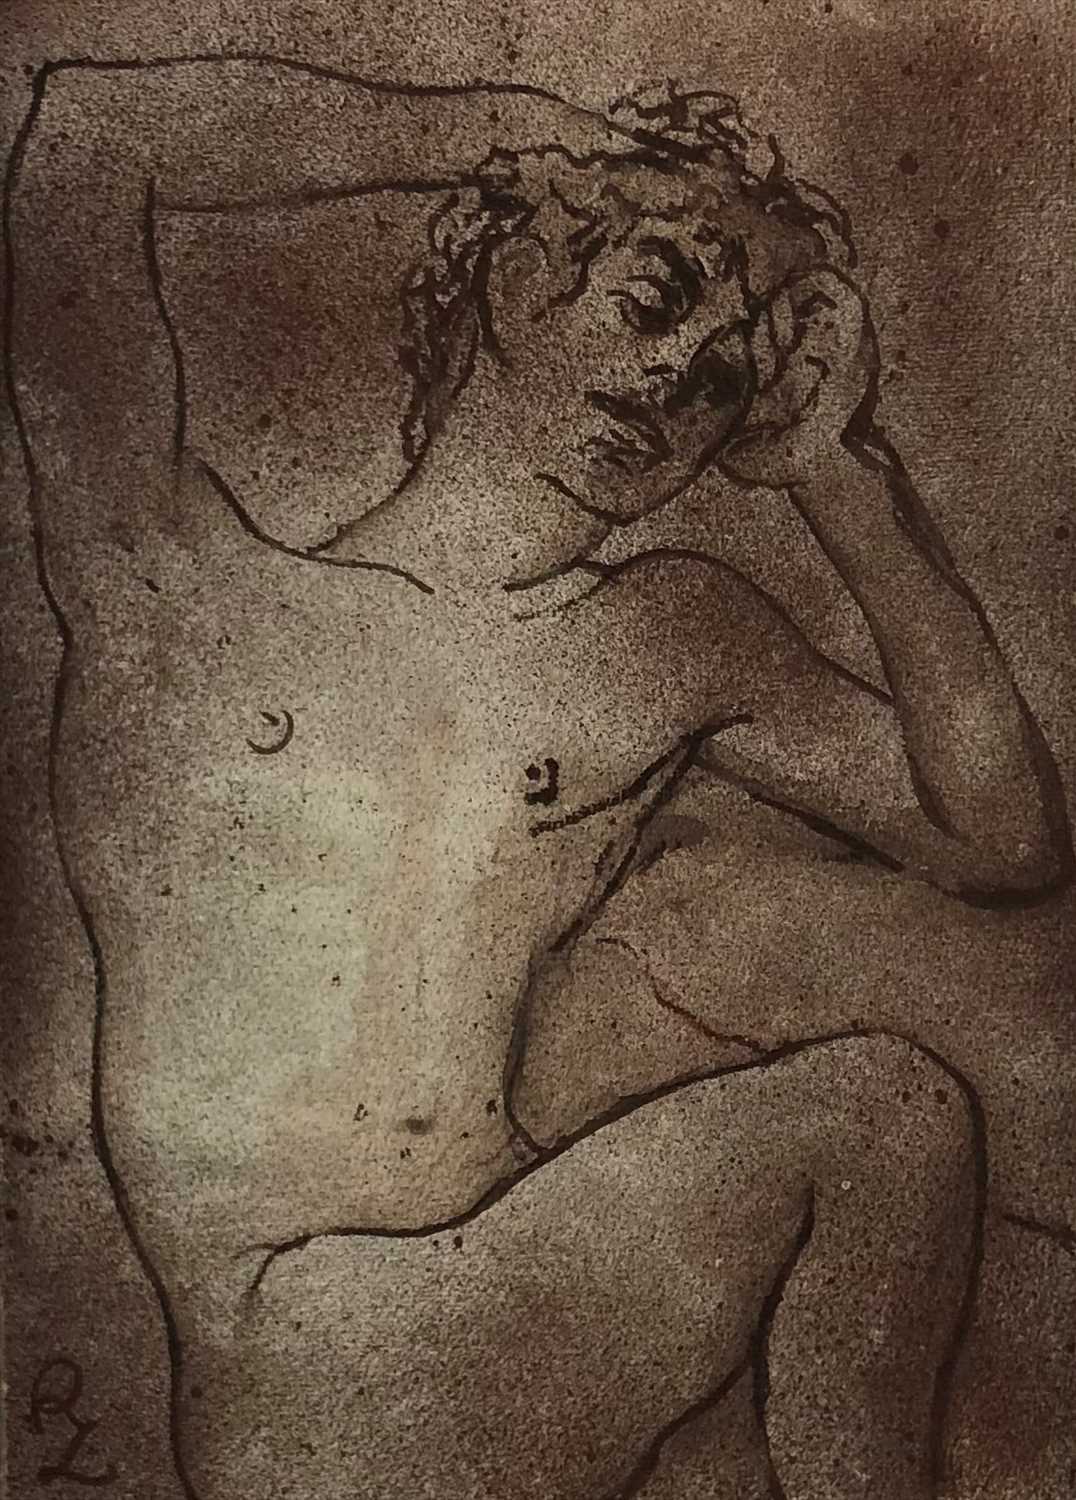 Lot 16 - Zsuzsi Roboz (Hungarian 20th-21st Century, 1929-2012), Reclining Nude